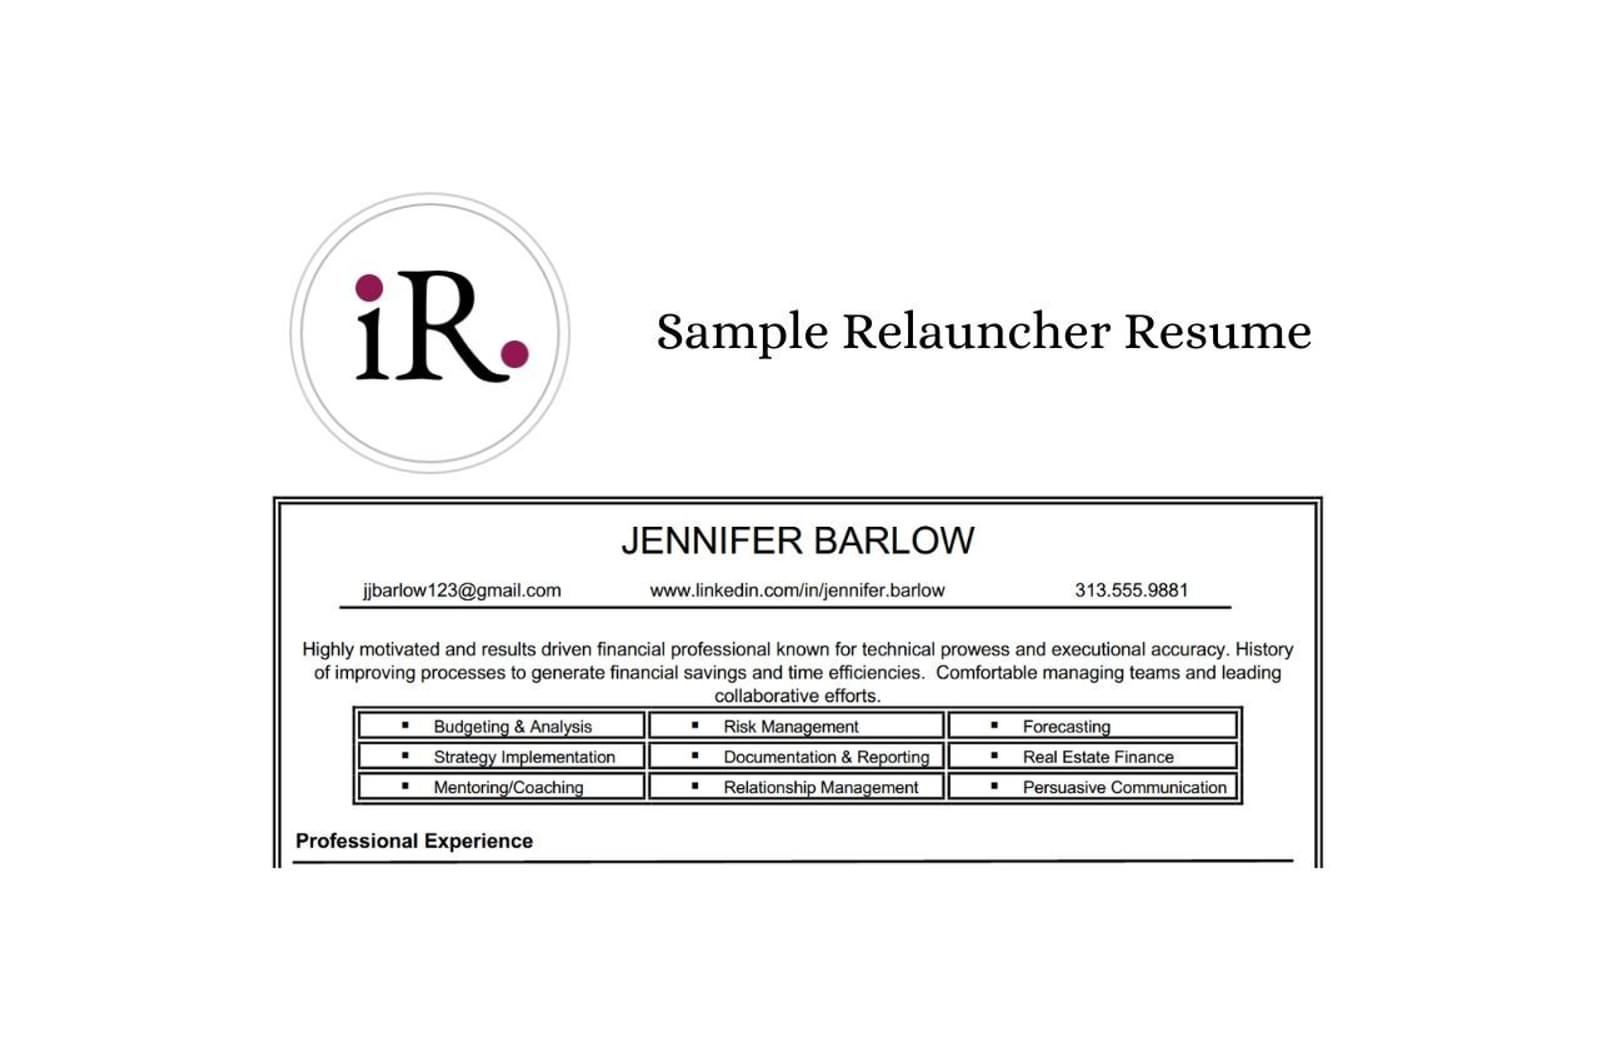 Sample Relauncher Resume Jennifer Barlow Thumbnail